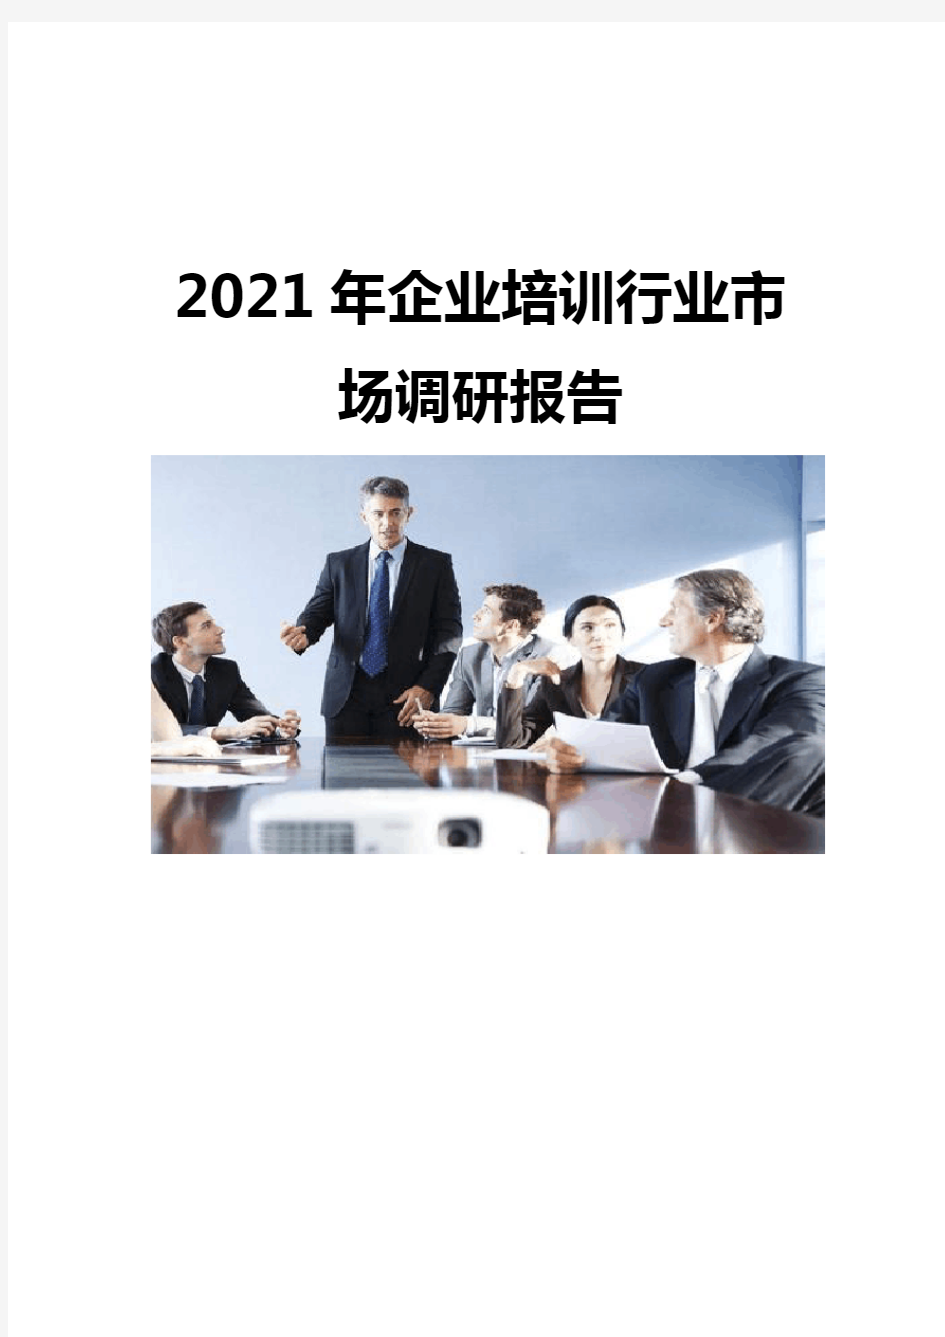 2021企业培训行业市场调研报告